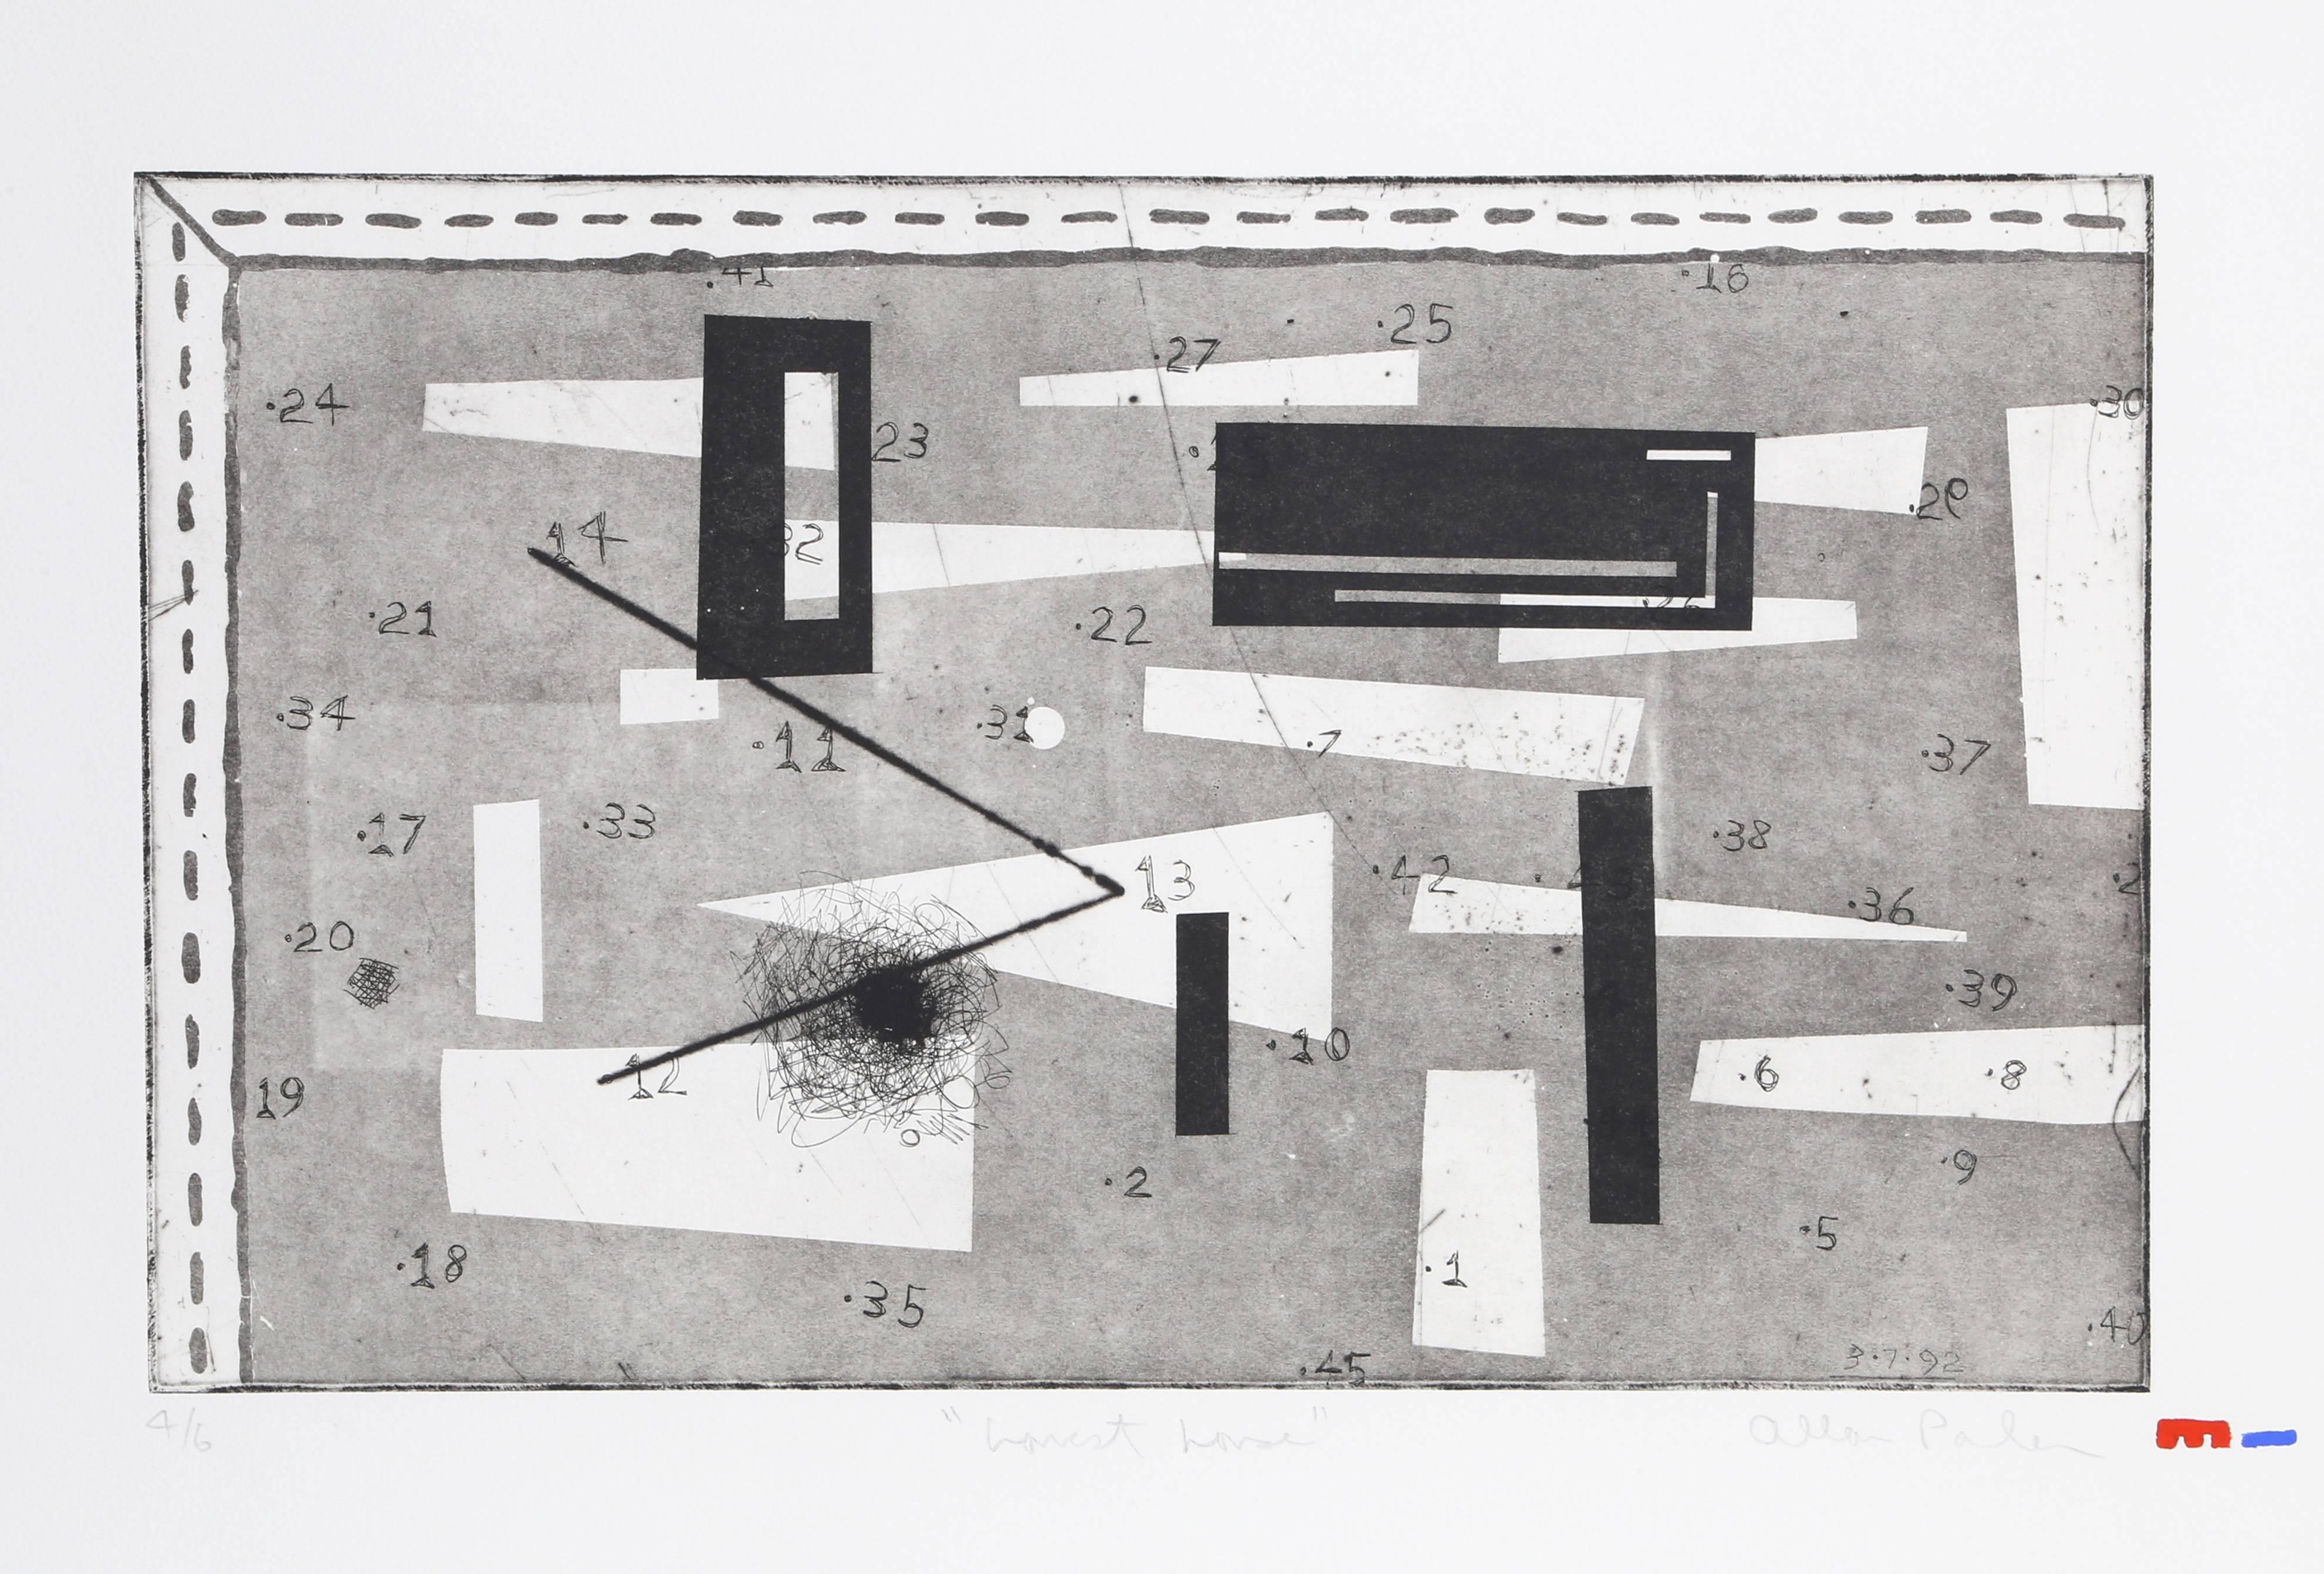 Künstler: Alan Parker, Kanadier
Titel: Niedrigstes Haus
Jahr: 1992
Medium: Radierung mit Aquatinta, mit Bleistift signiert und nummeriert
Bildgröße: 12,5 x 17,5 Zoll
Größe: 22  x 29.5 in. (55.88  x 74.93 cm)